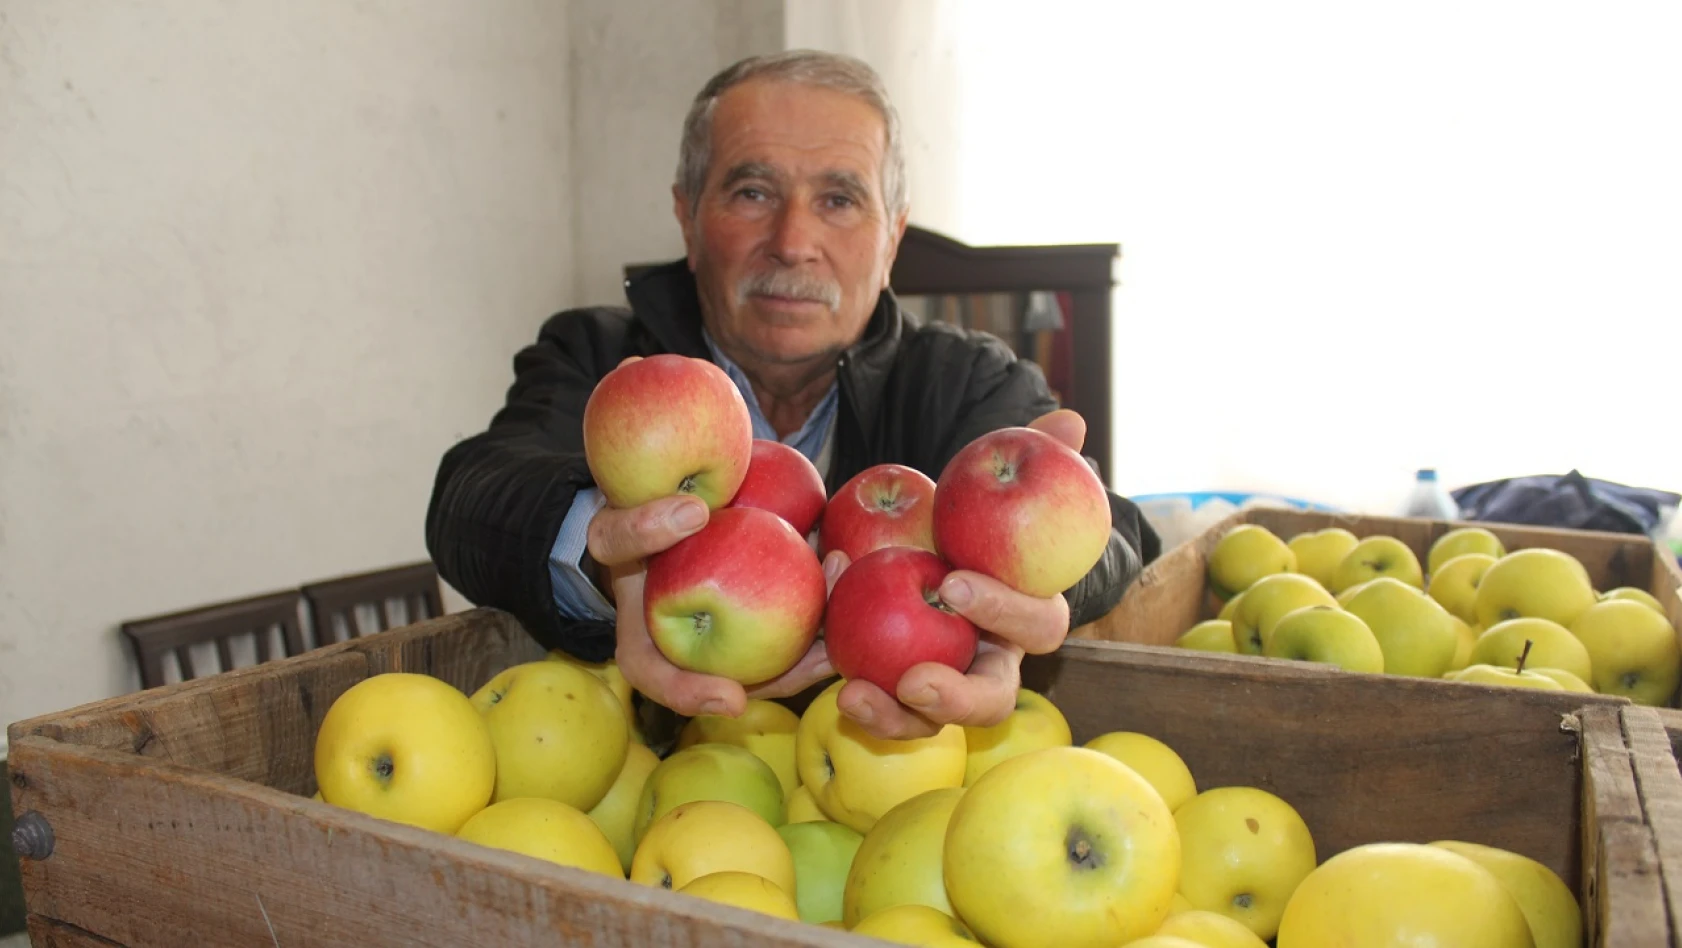 Tosya'da 1700 ton elma hasadı yapıldı